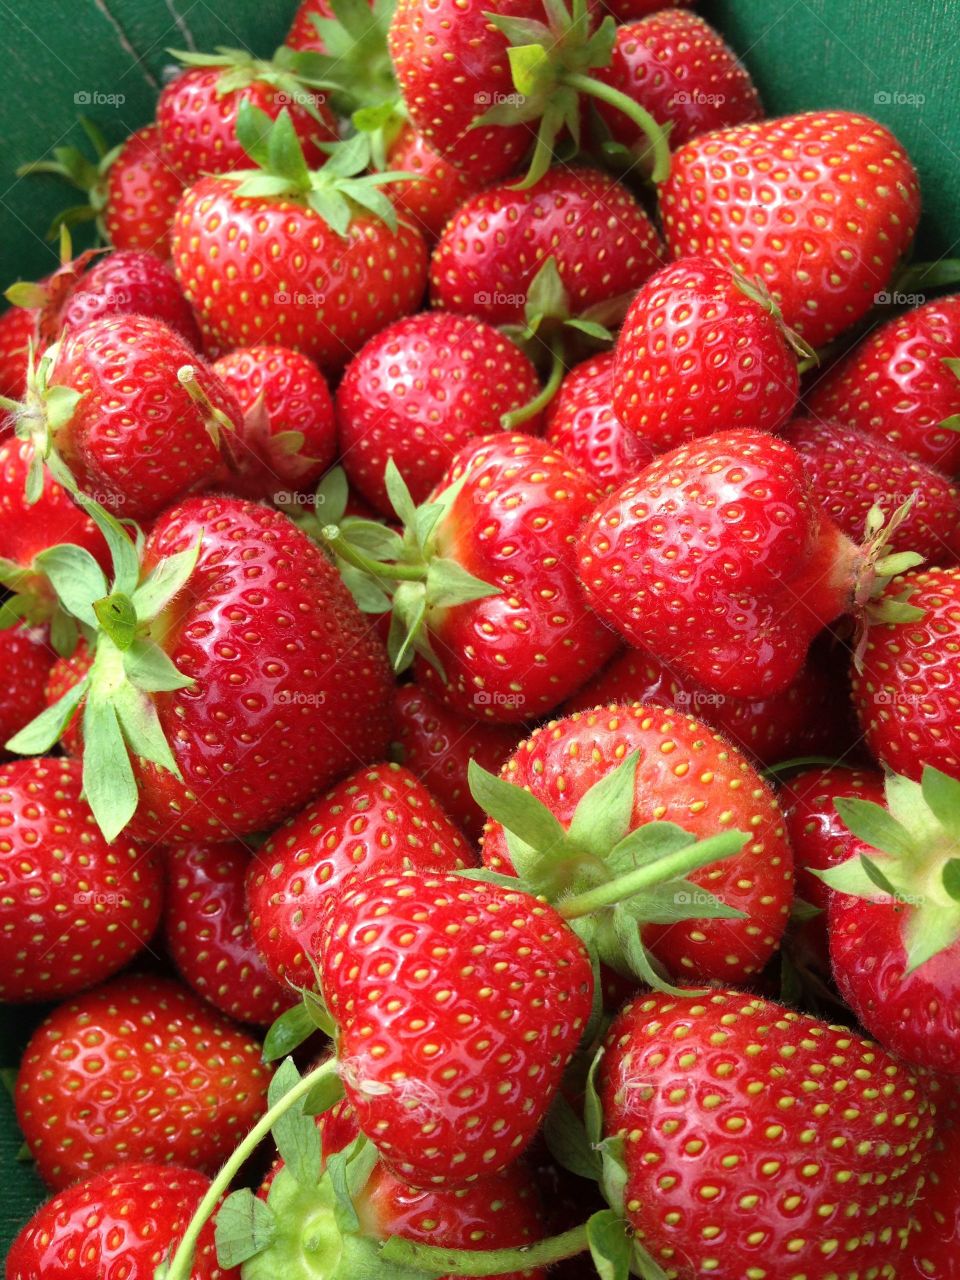 Punnet of strawberries for jam making